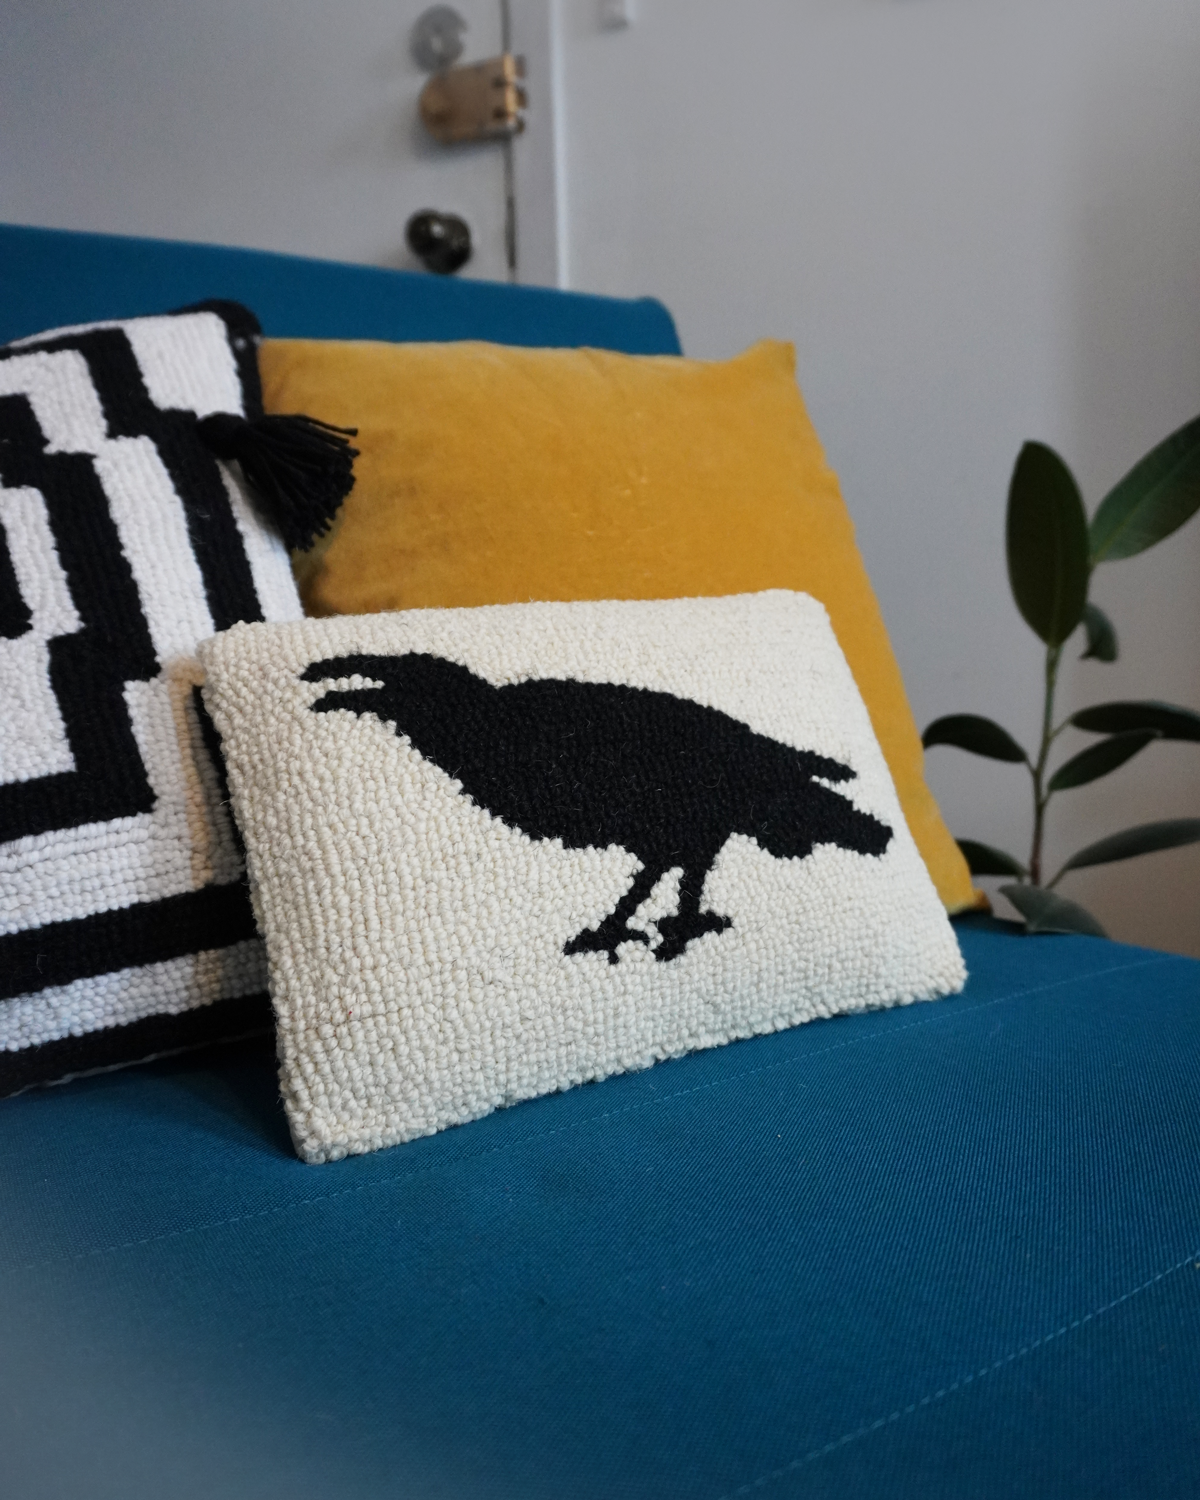 Raven Hook Pillow